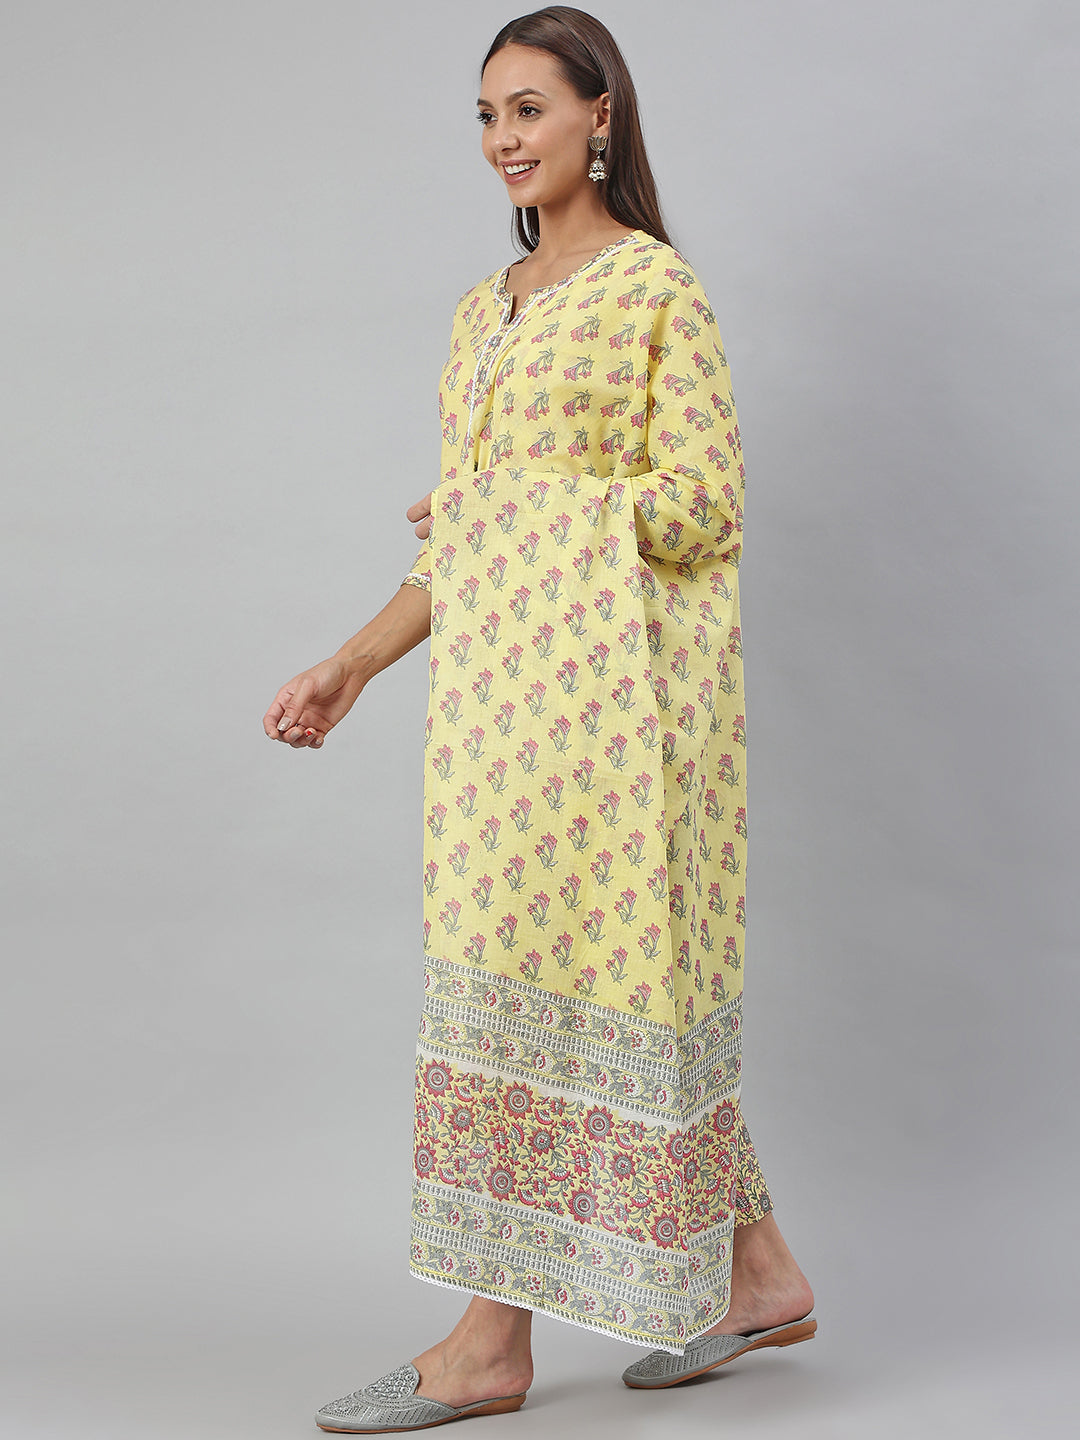 Janasya Women's Yellow Cotton Floral Print Kurta With Pant And Dupatta - Distacart